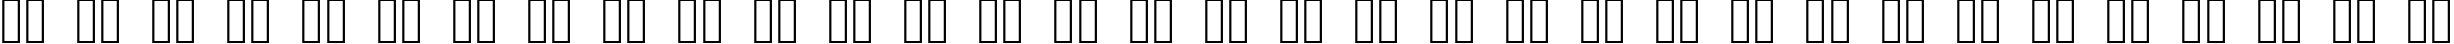 Пример написания русского алфавита шрифтом Braize-Demo